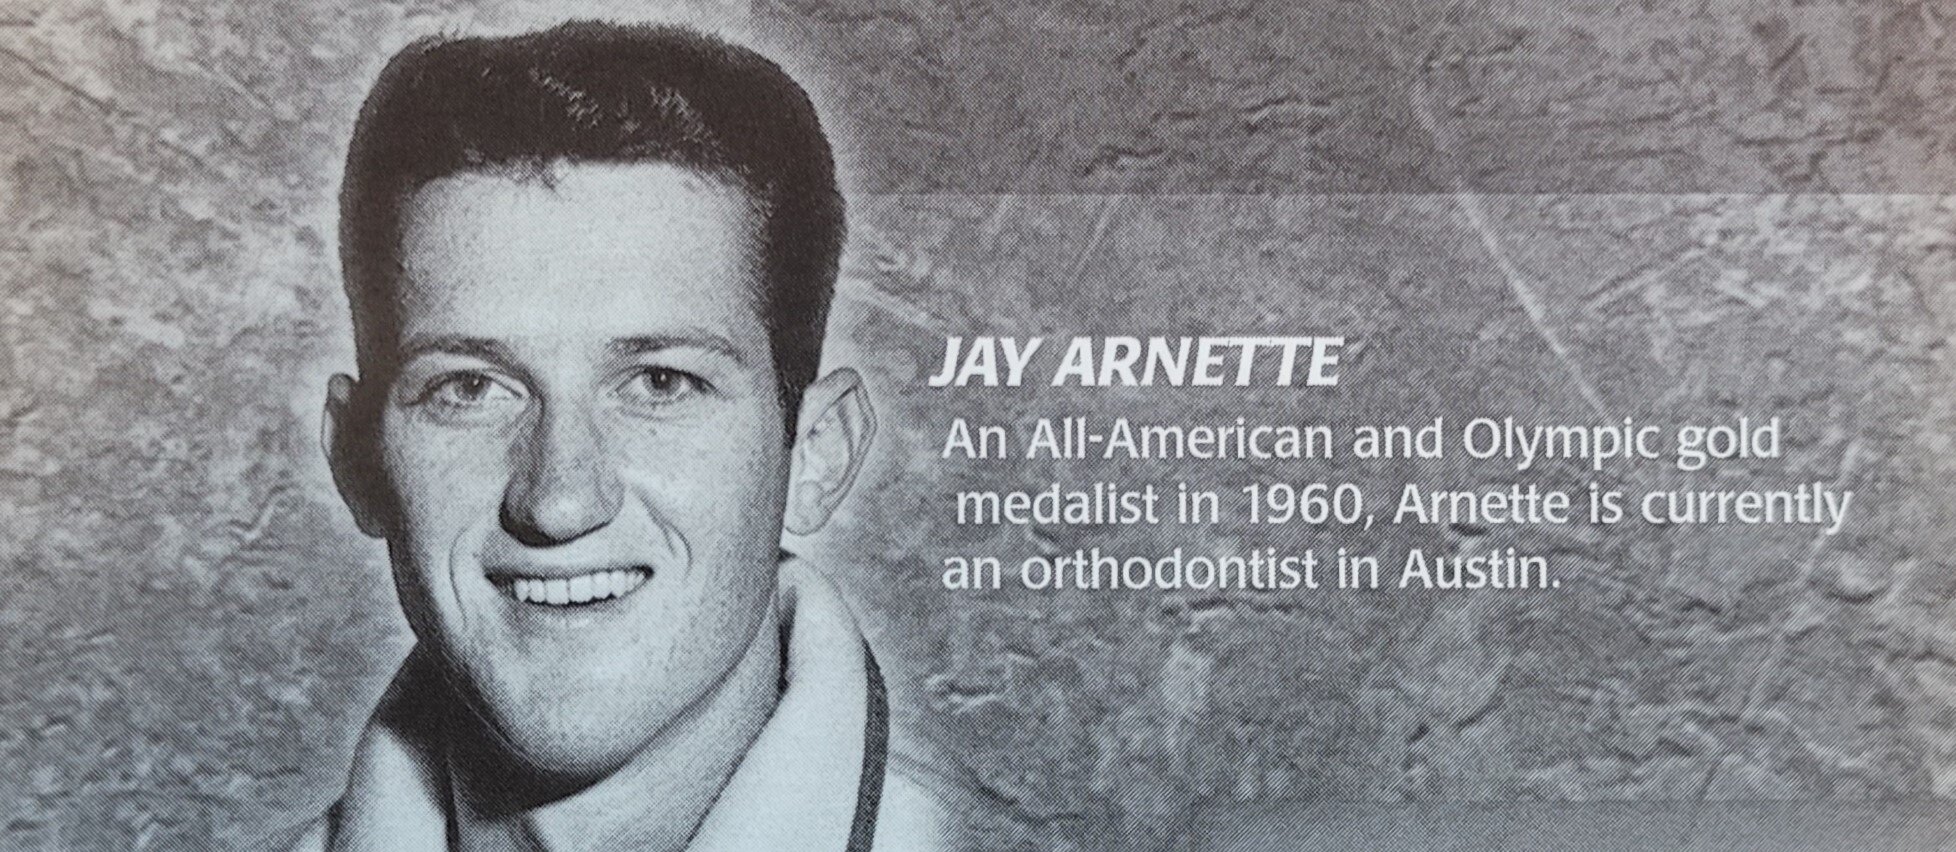 2004-2005 men's basketball Jay Arnette.jpg